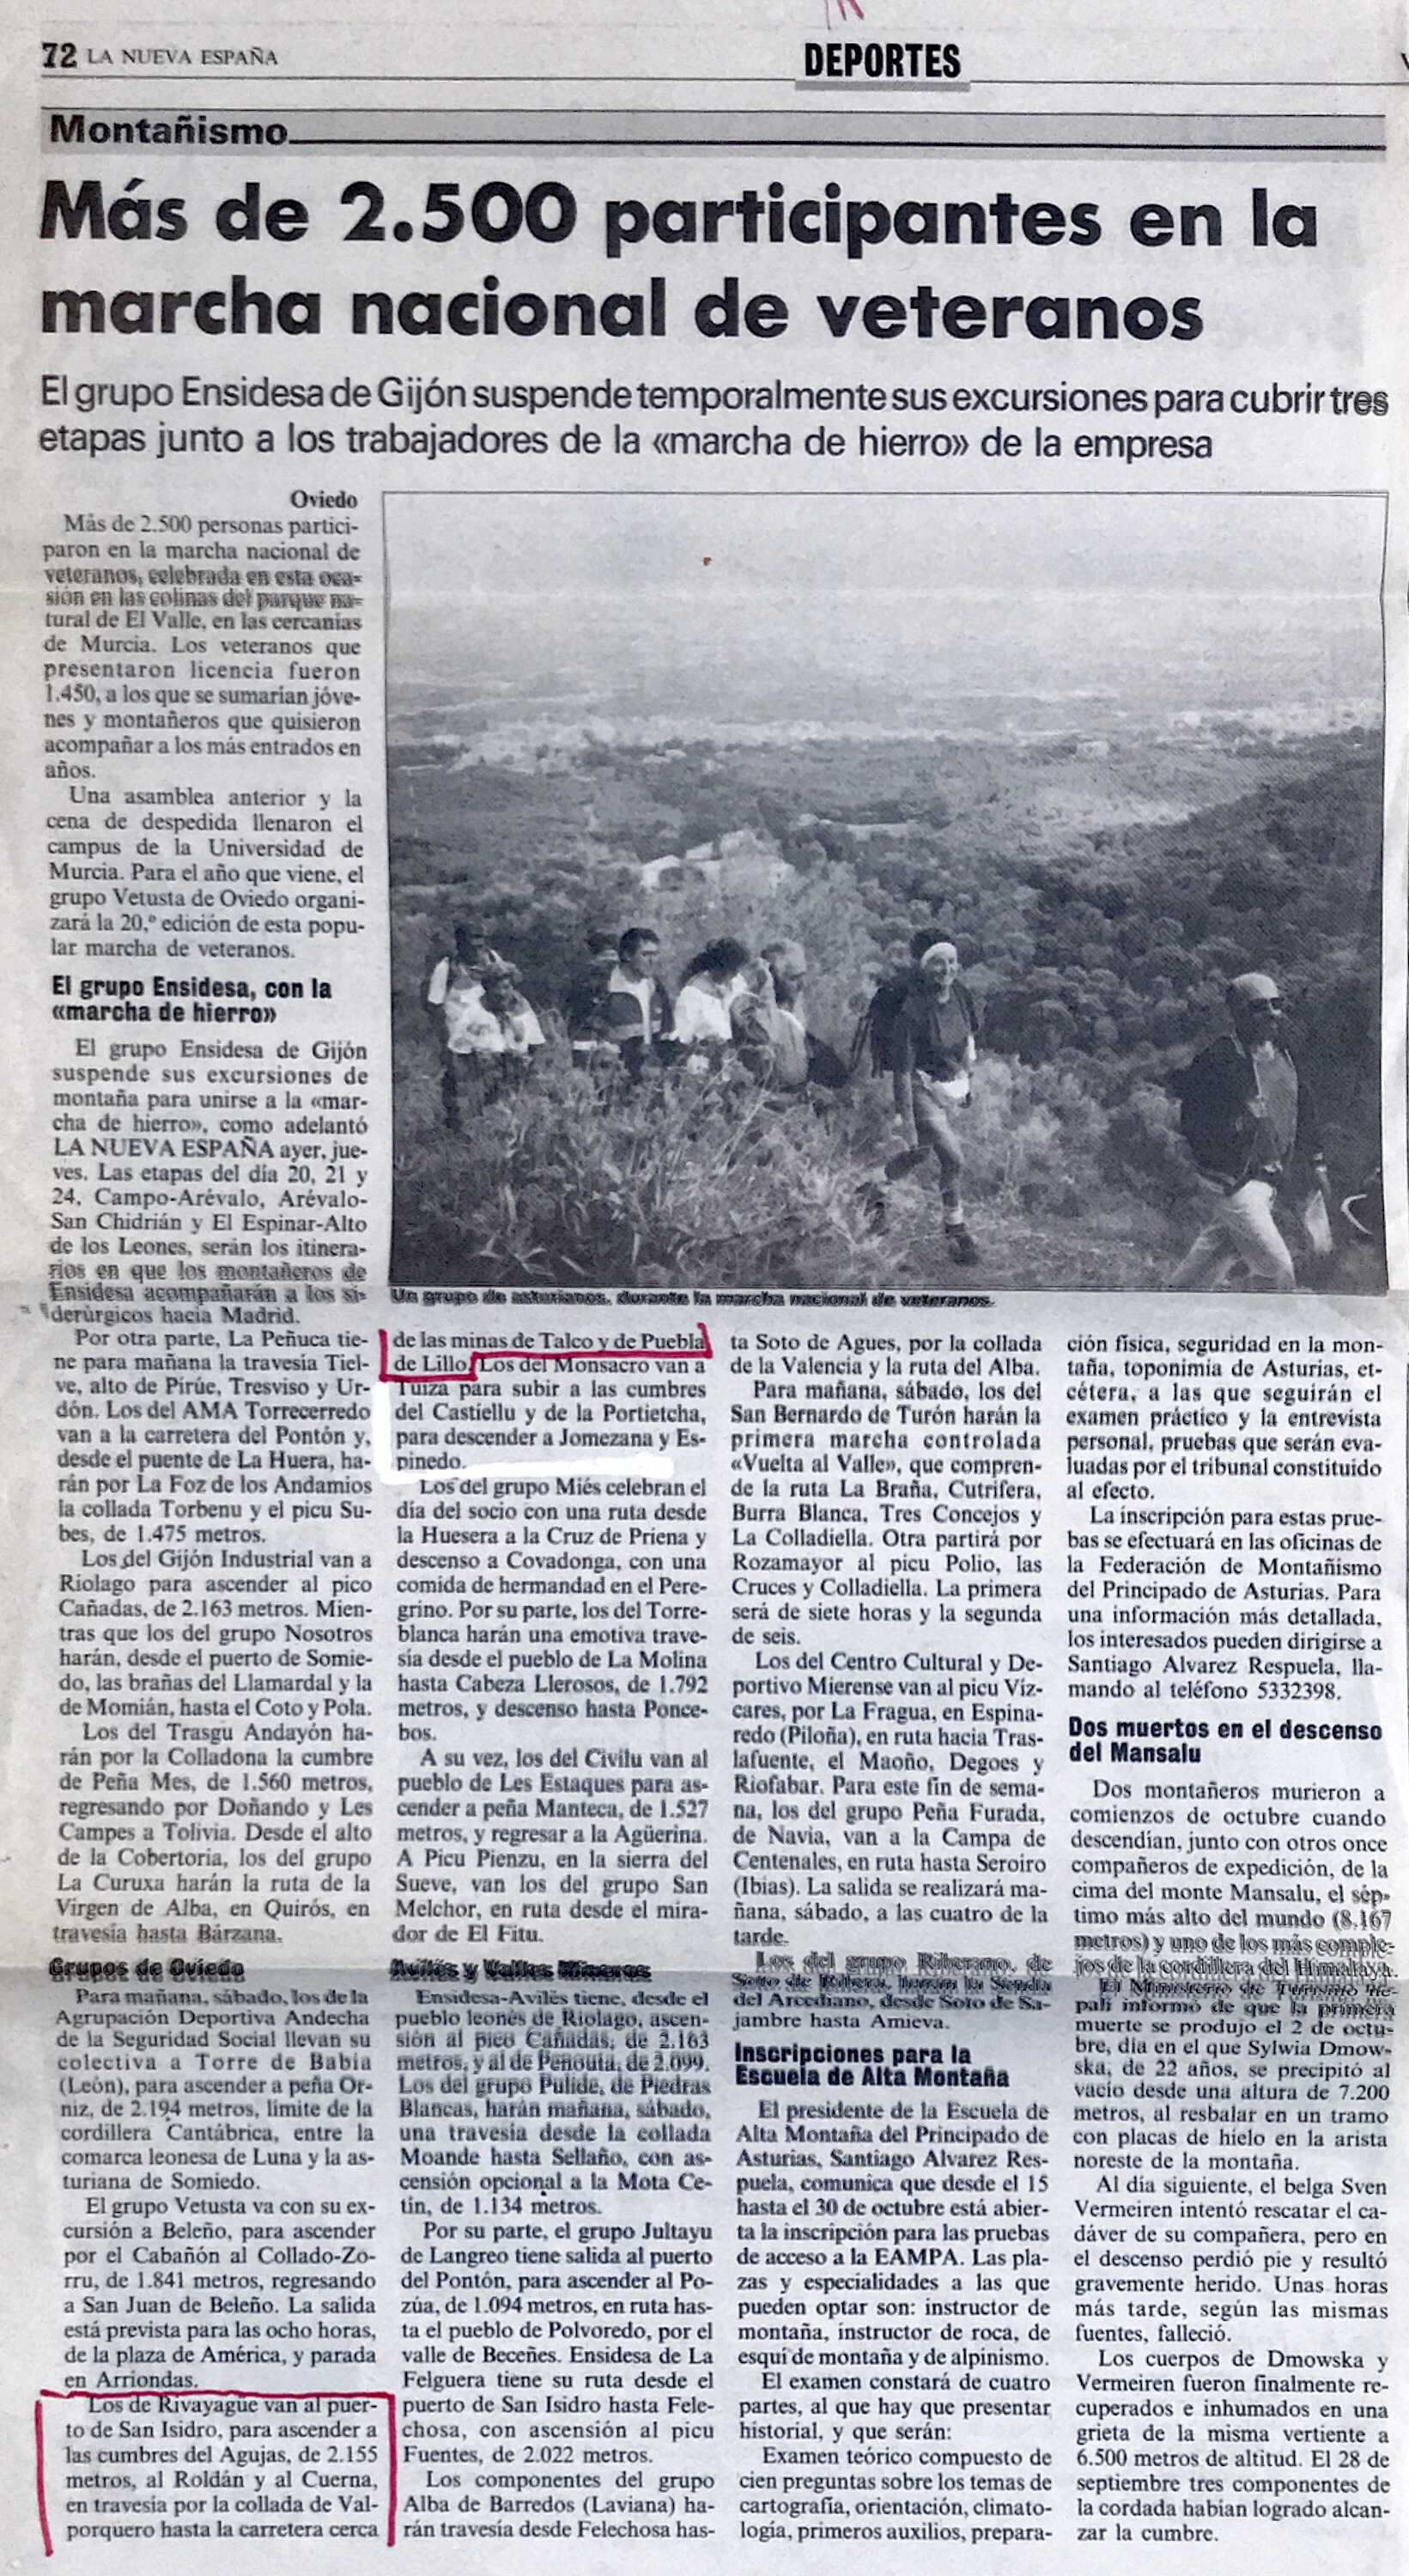 18 octubre, 1992: Picos Roldán y Cuerna